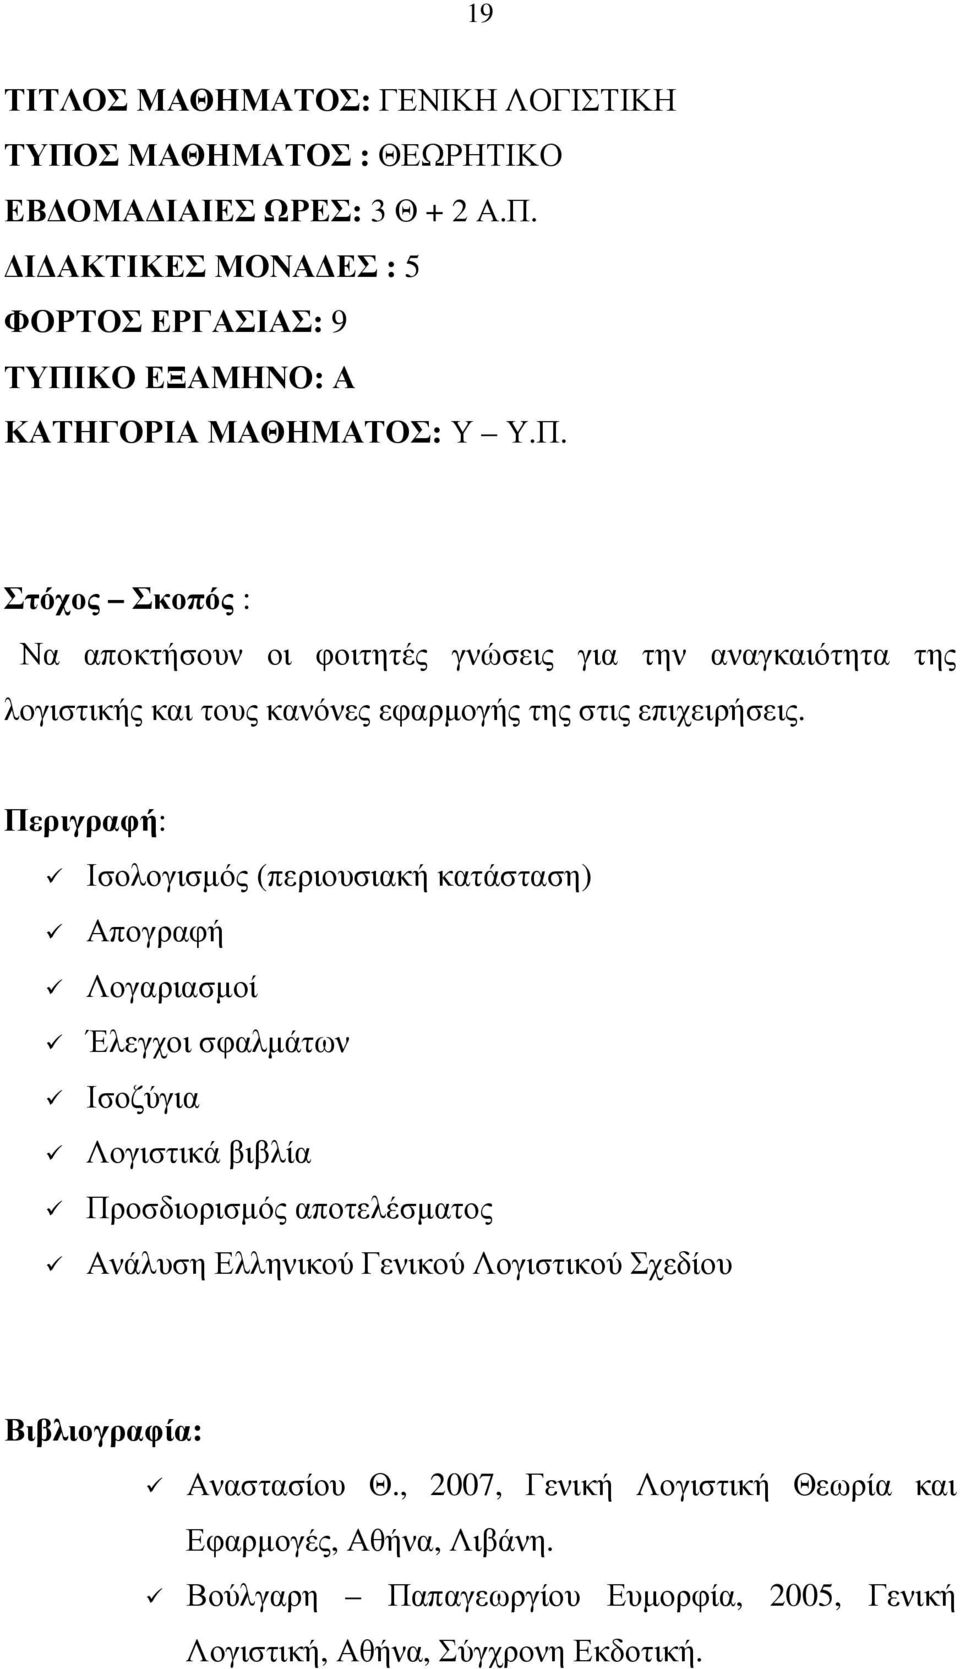 Περιγραφή: Ισολογισµός (περιουσιακή κατάσταση) Απογραφή Λογαριασµοί Έλεγχοι σφαλµάτων Ισοζύγια Λογιστικά βιβλία Προσδιορισµός αποτελέσµατος Ανάλυση Ελληνικού Γενικού